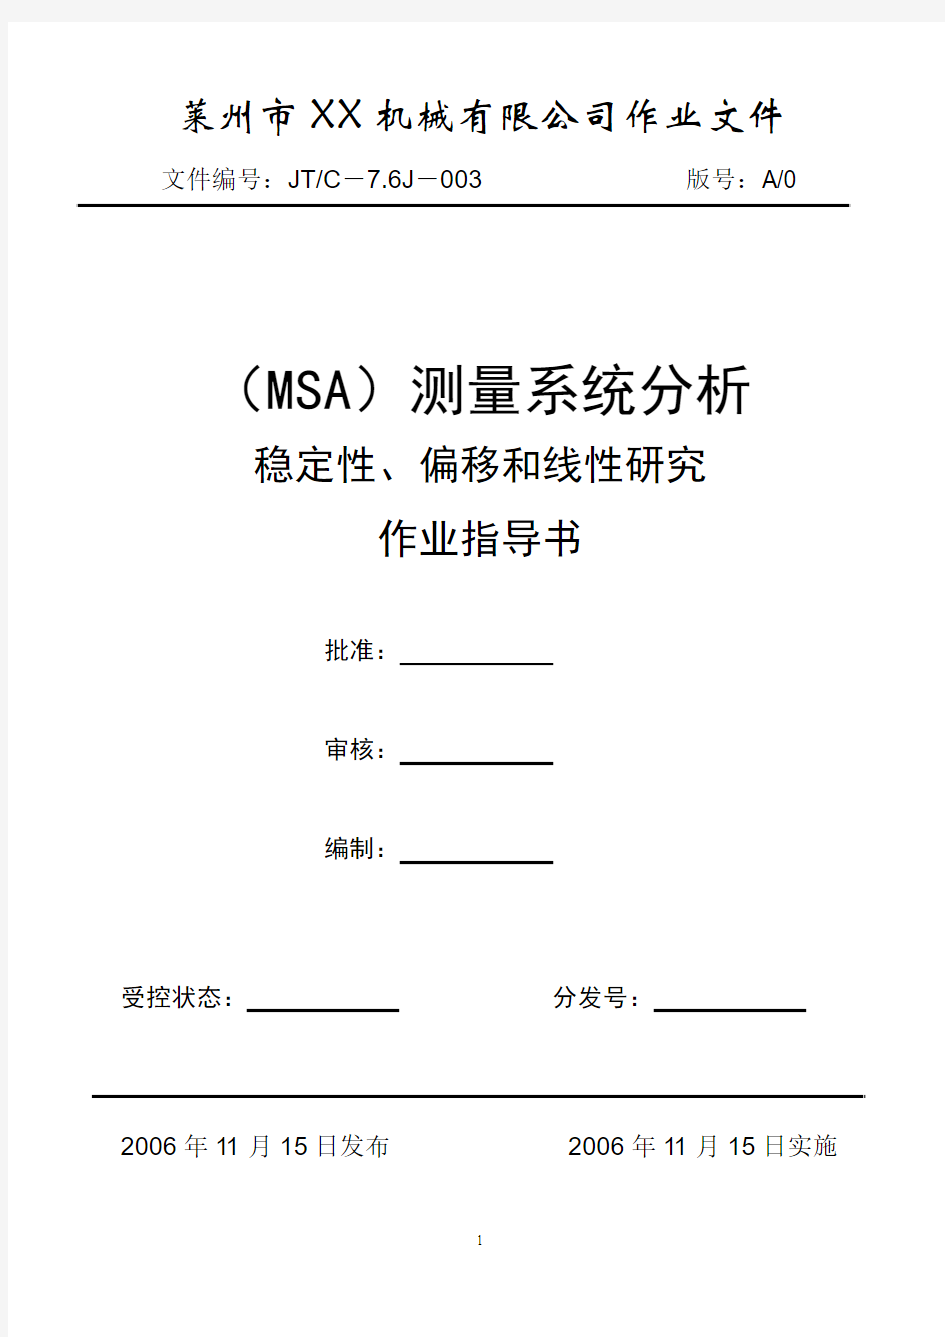 MSA测量系统(稳定性、偏移和线性研究)分析报告